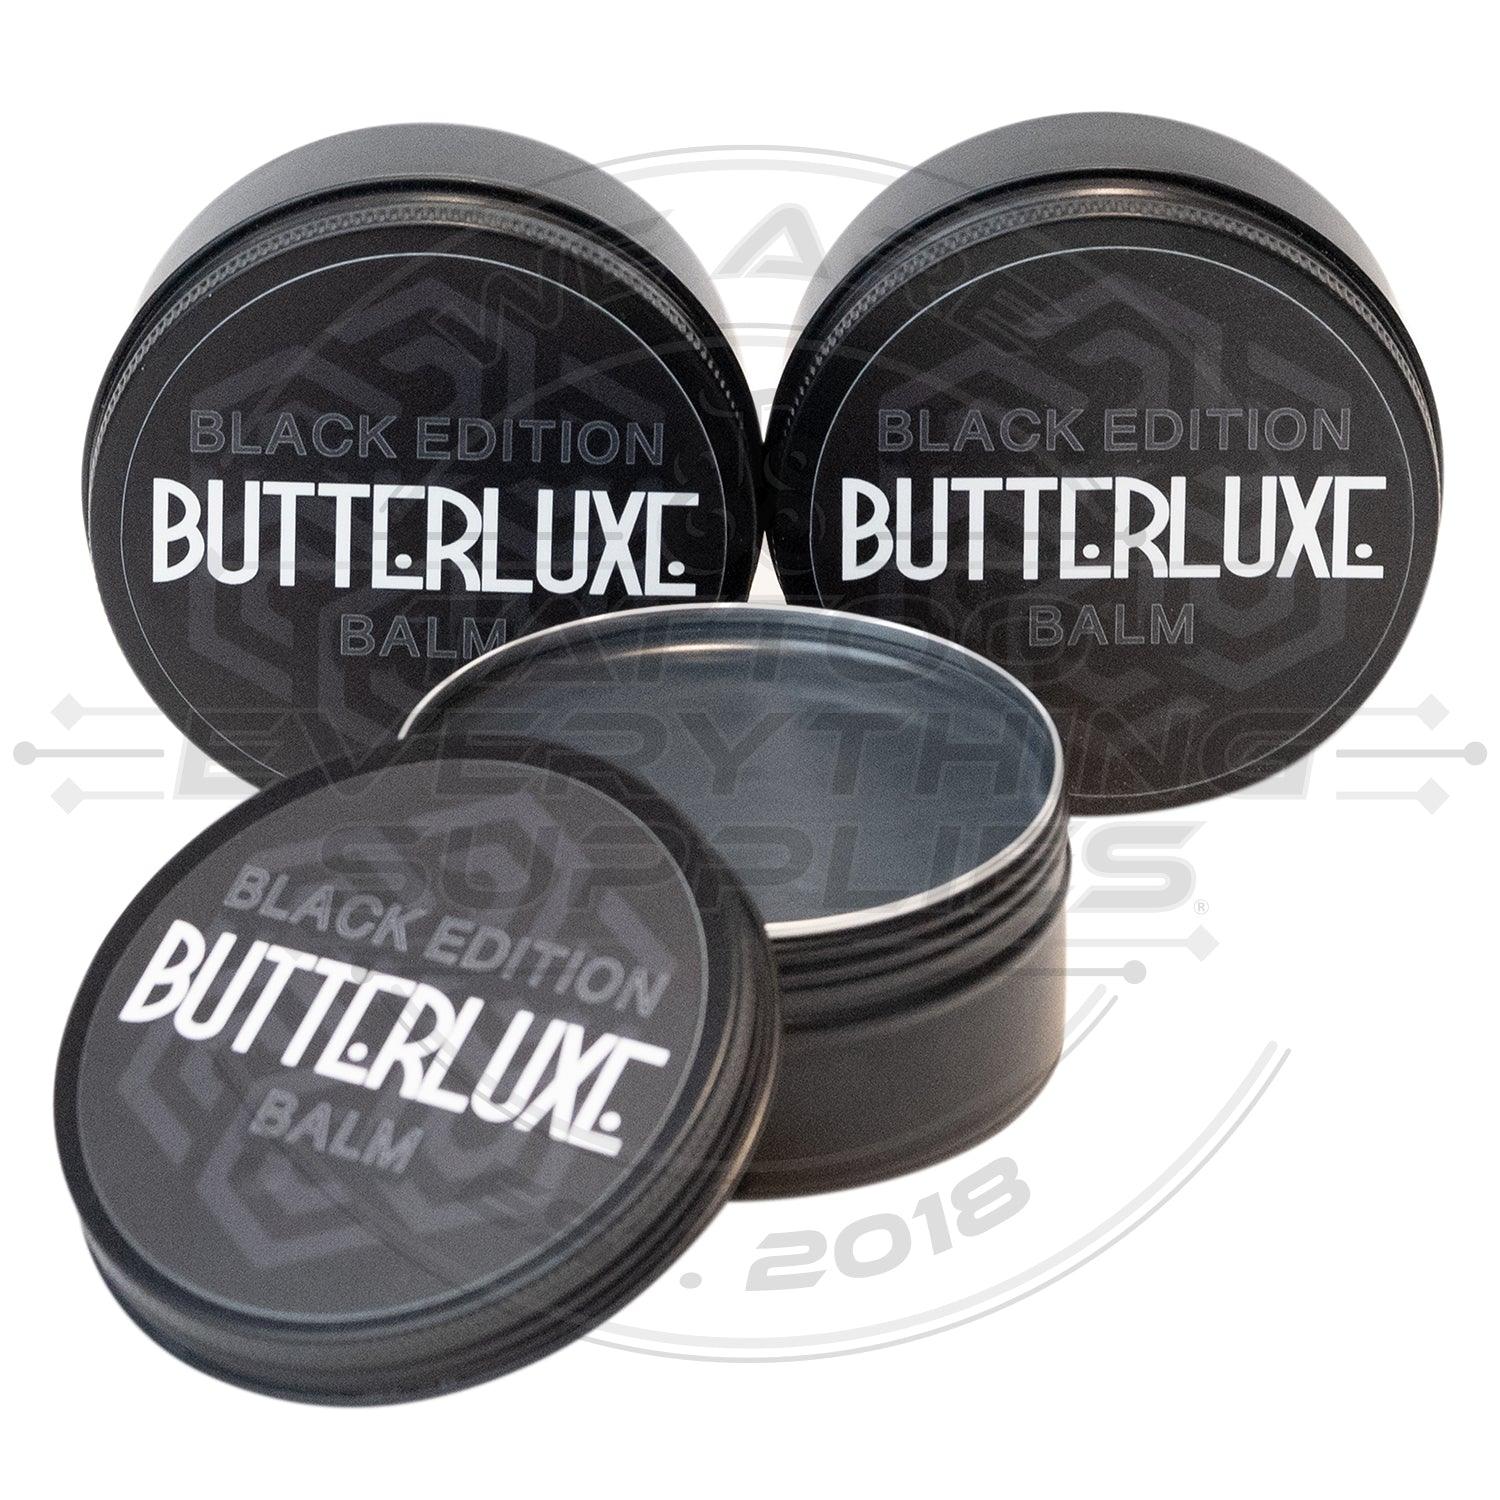 Butterluxe UK